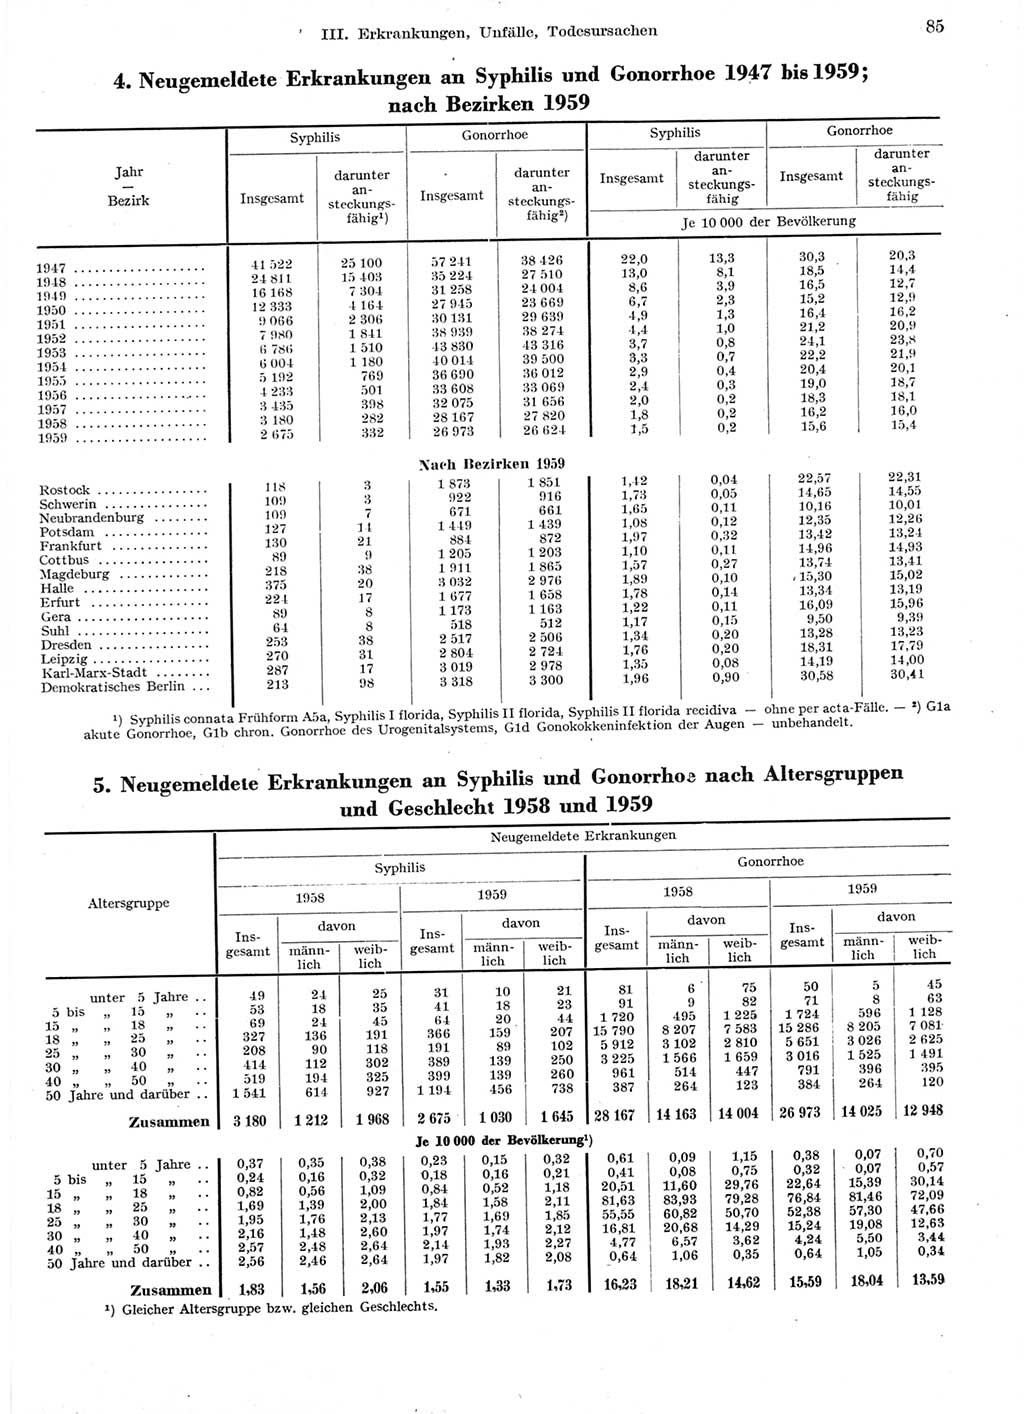 Statistisches Jahrbuch der Deutschen Demokratischen Republik (DDR) 1959, Seite 85 (Stat. Jb. DDR 1959, S. 85)